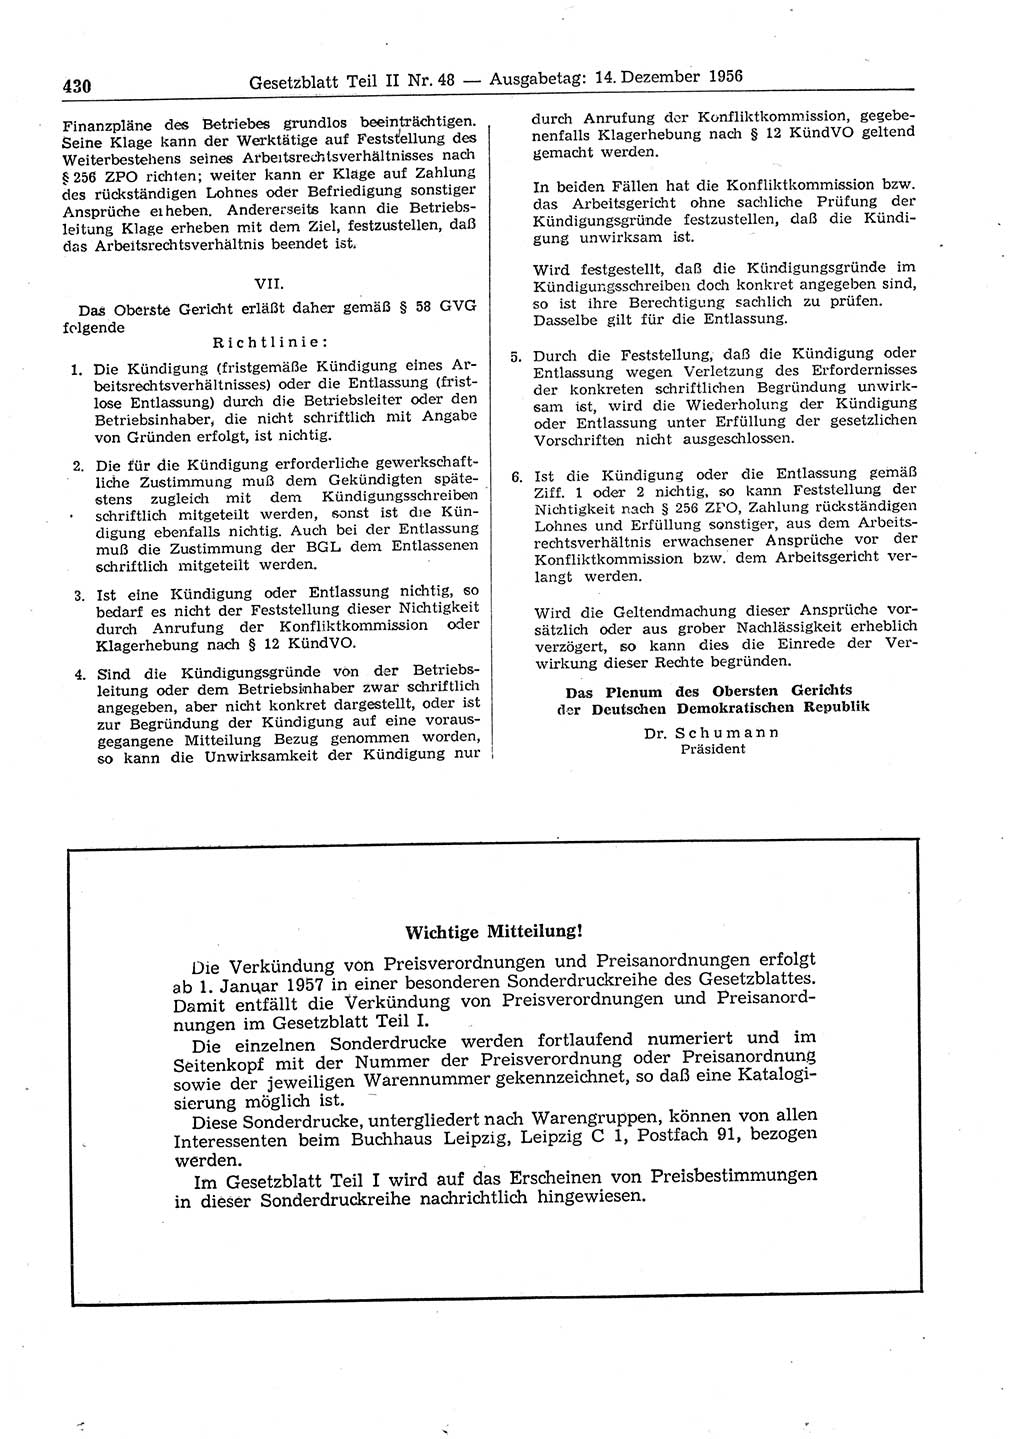 Gesetzblatt (GBl.) der Deutschen Demokratischen Republik (DDR) Teil ⅠⅠ 1956, Seite 430 (GBl. DDR ⅠⅠ 1956, S. 430)